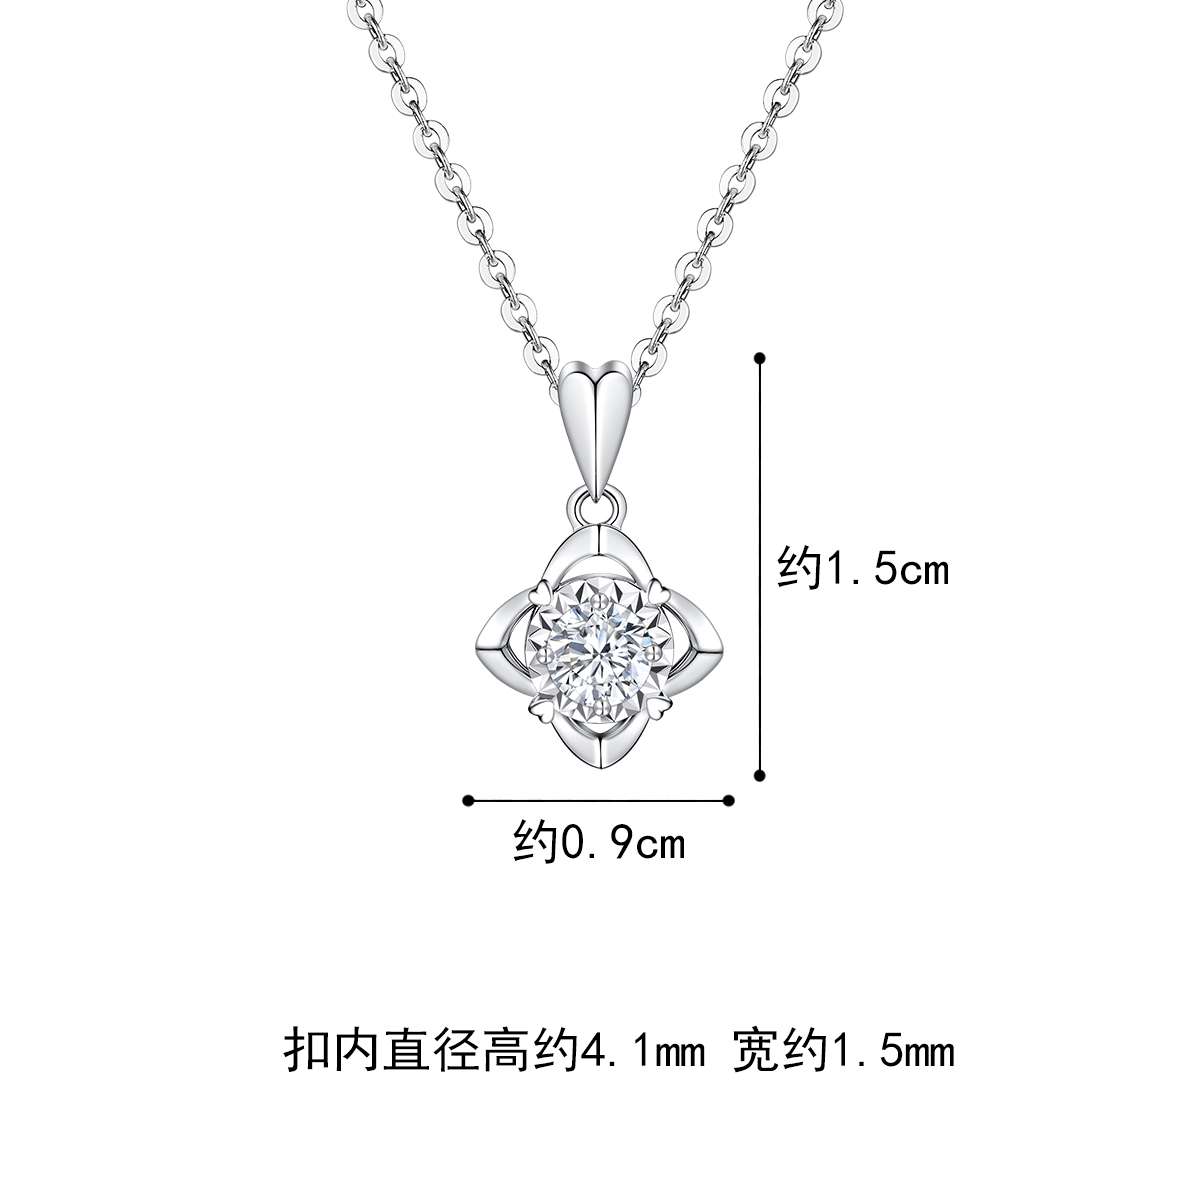 六福珠宝爱很美花蕾18K金钻石吊坠女钻石项链挂坠定价LB31426